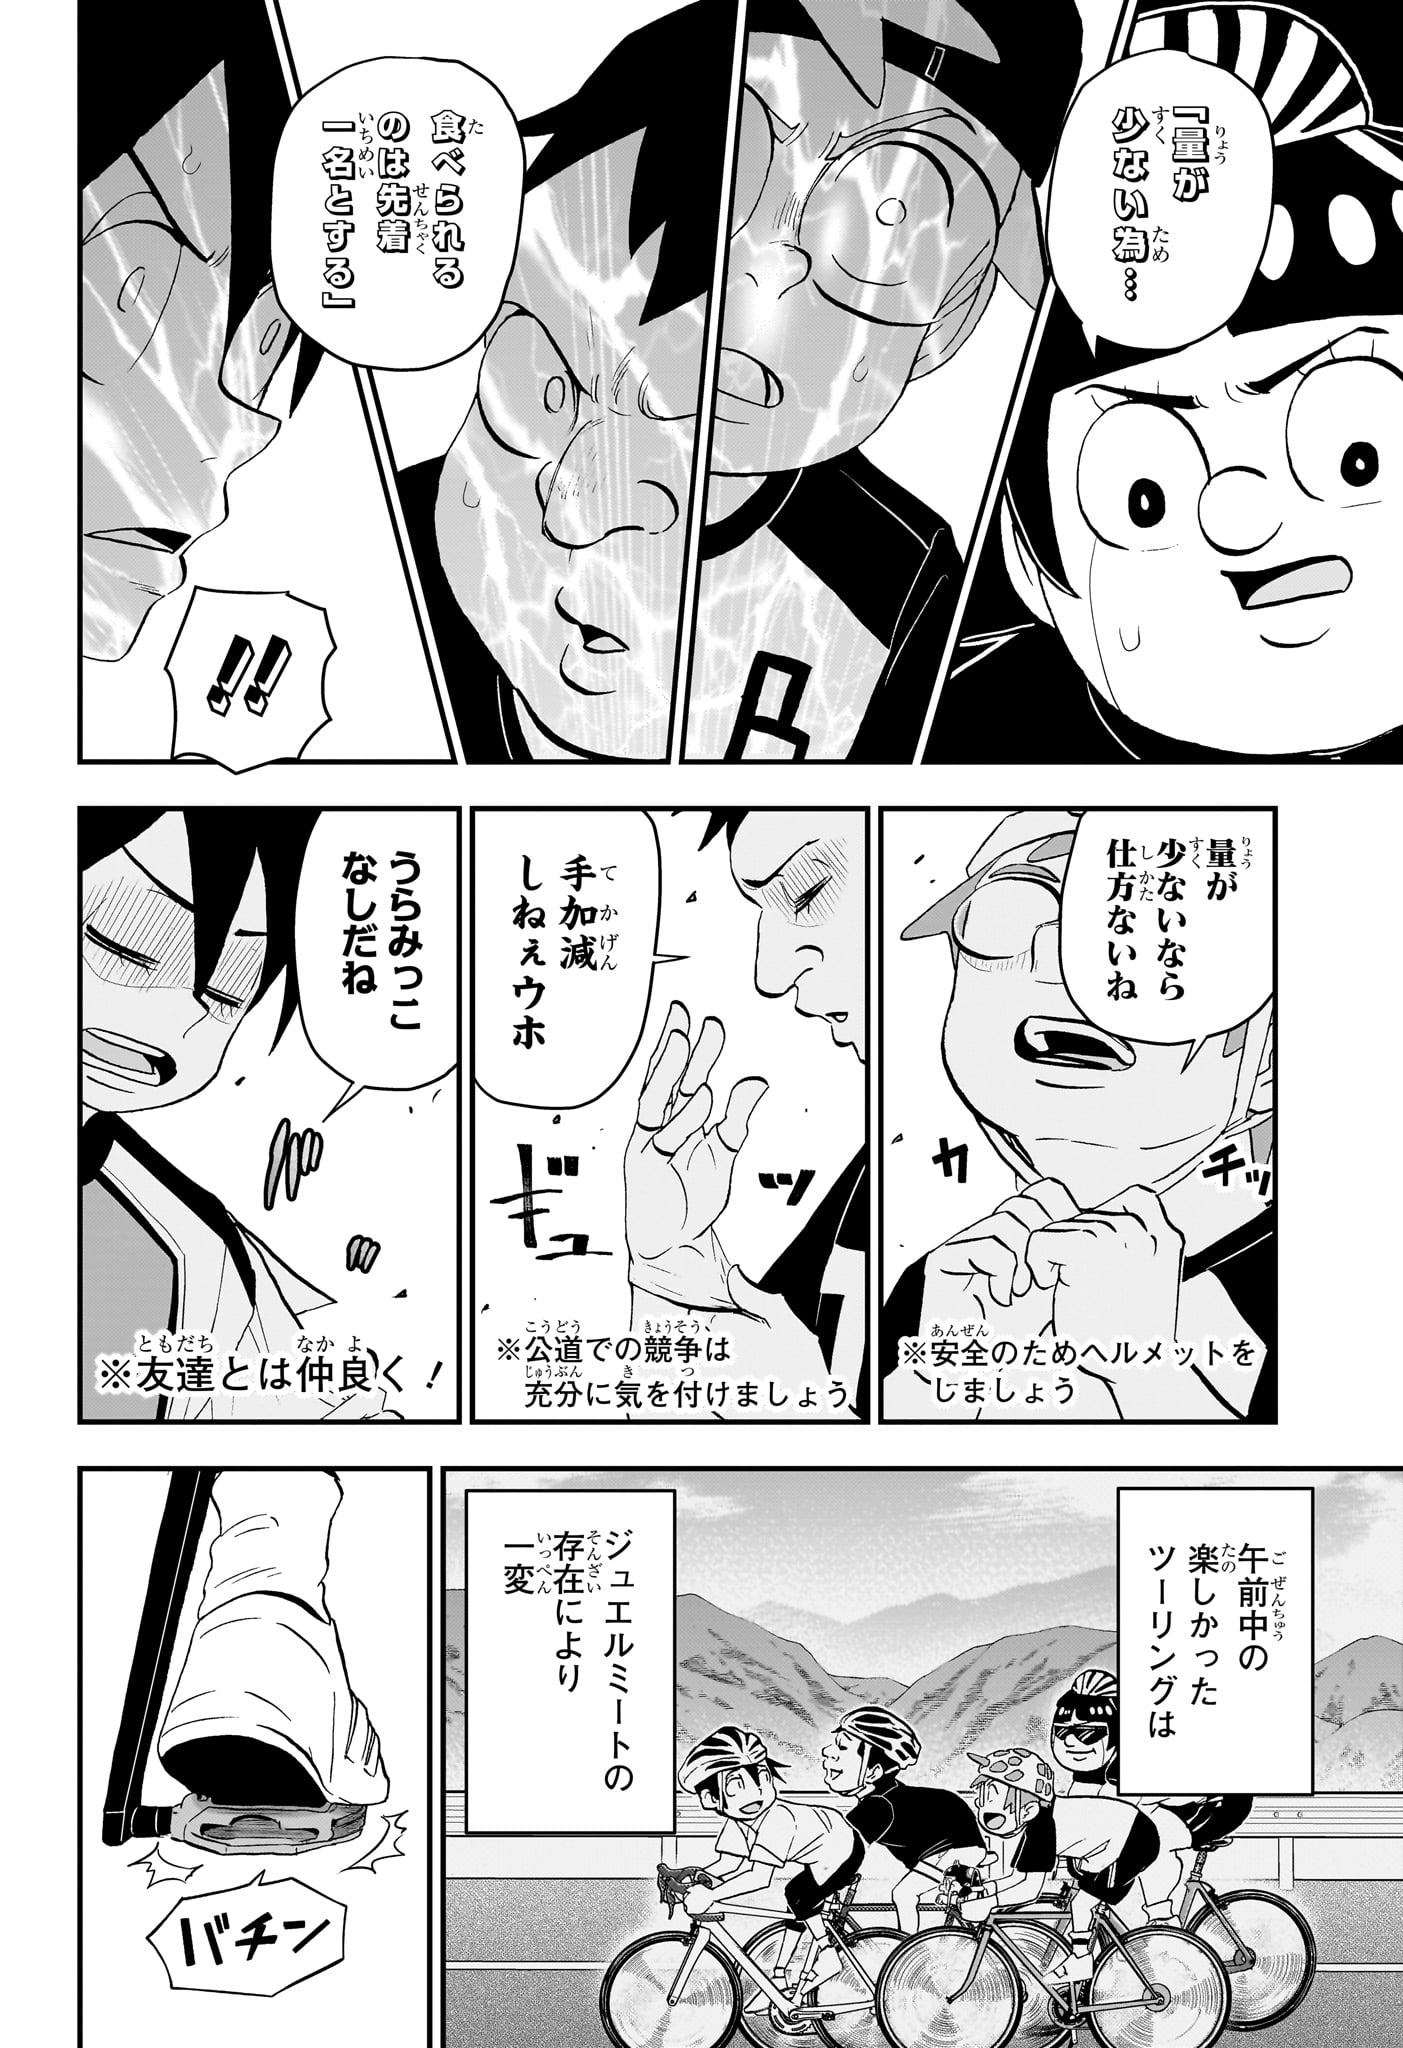 Boku to Roboko - Chapter 184 - Page 6